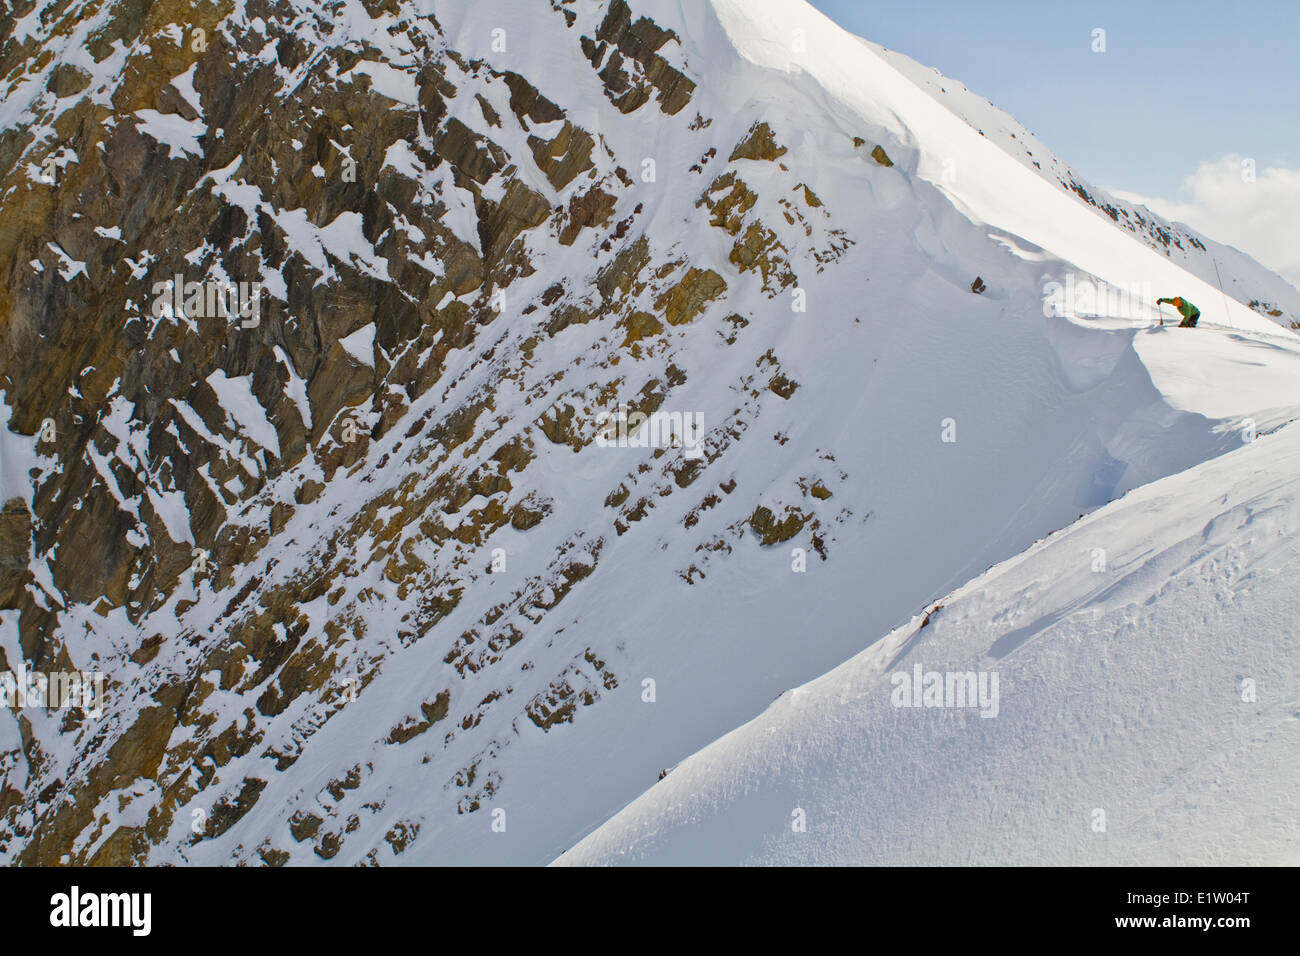 Eine männliche Backcountry Skifahrer schneiden ein Gesims, einige Tests vor der Festlegung auf die Ski-Linie Hang zu tun. Eisfall Lodge, Golden, BC Stockfoto